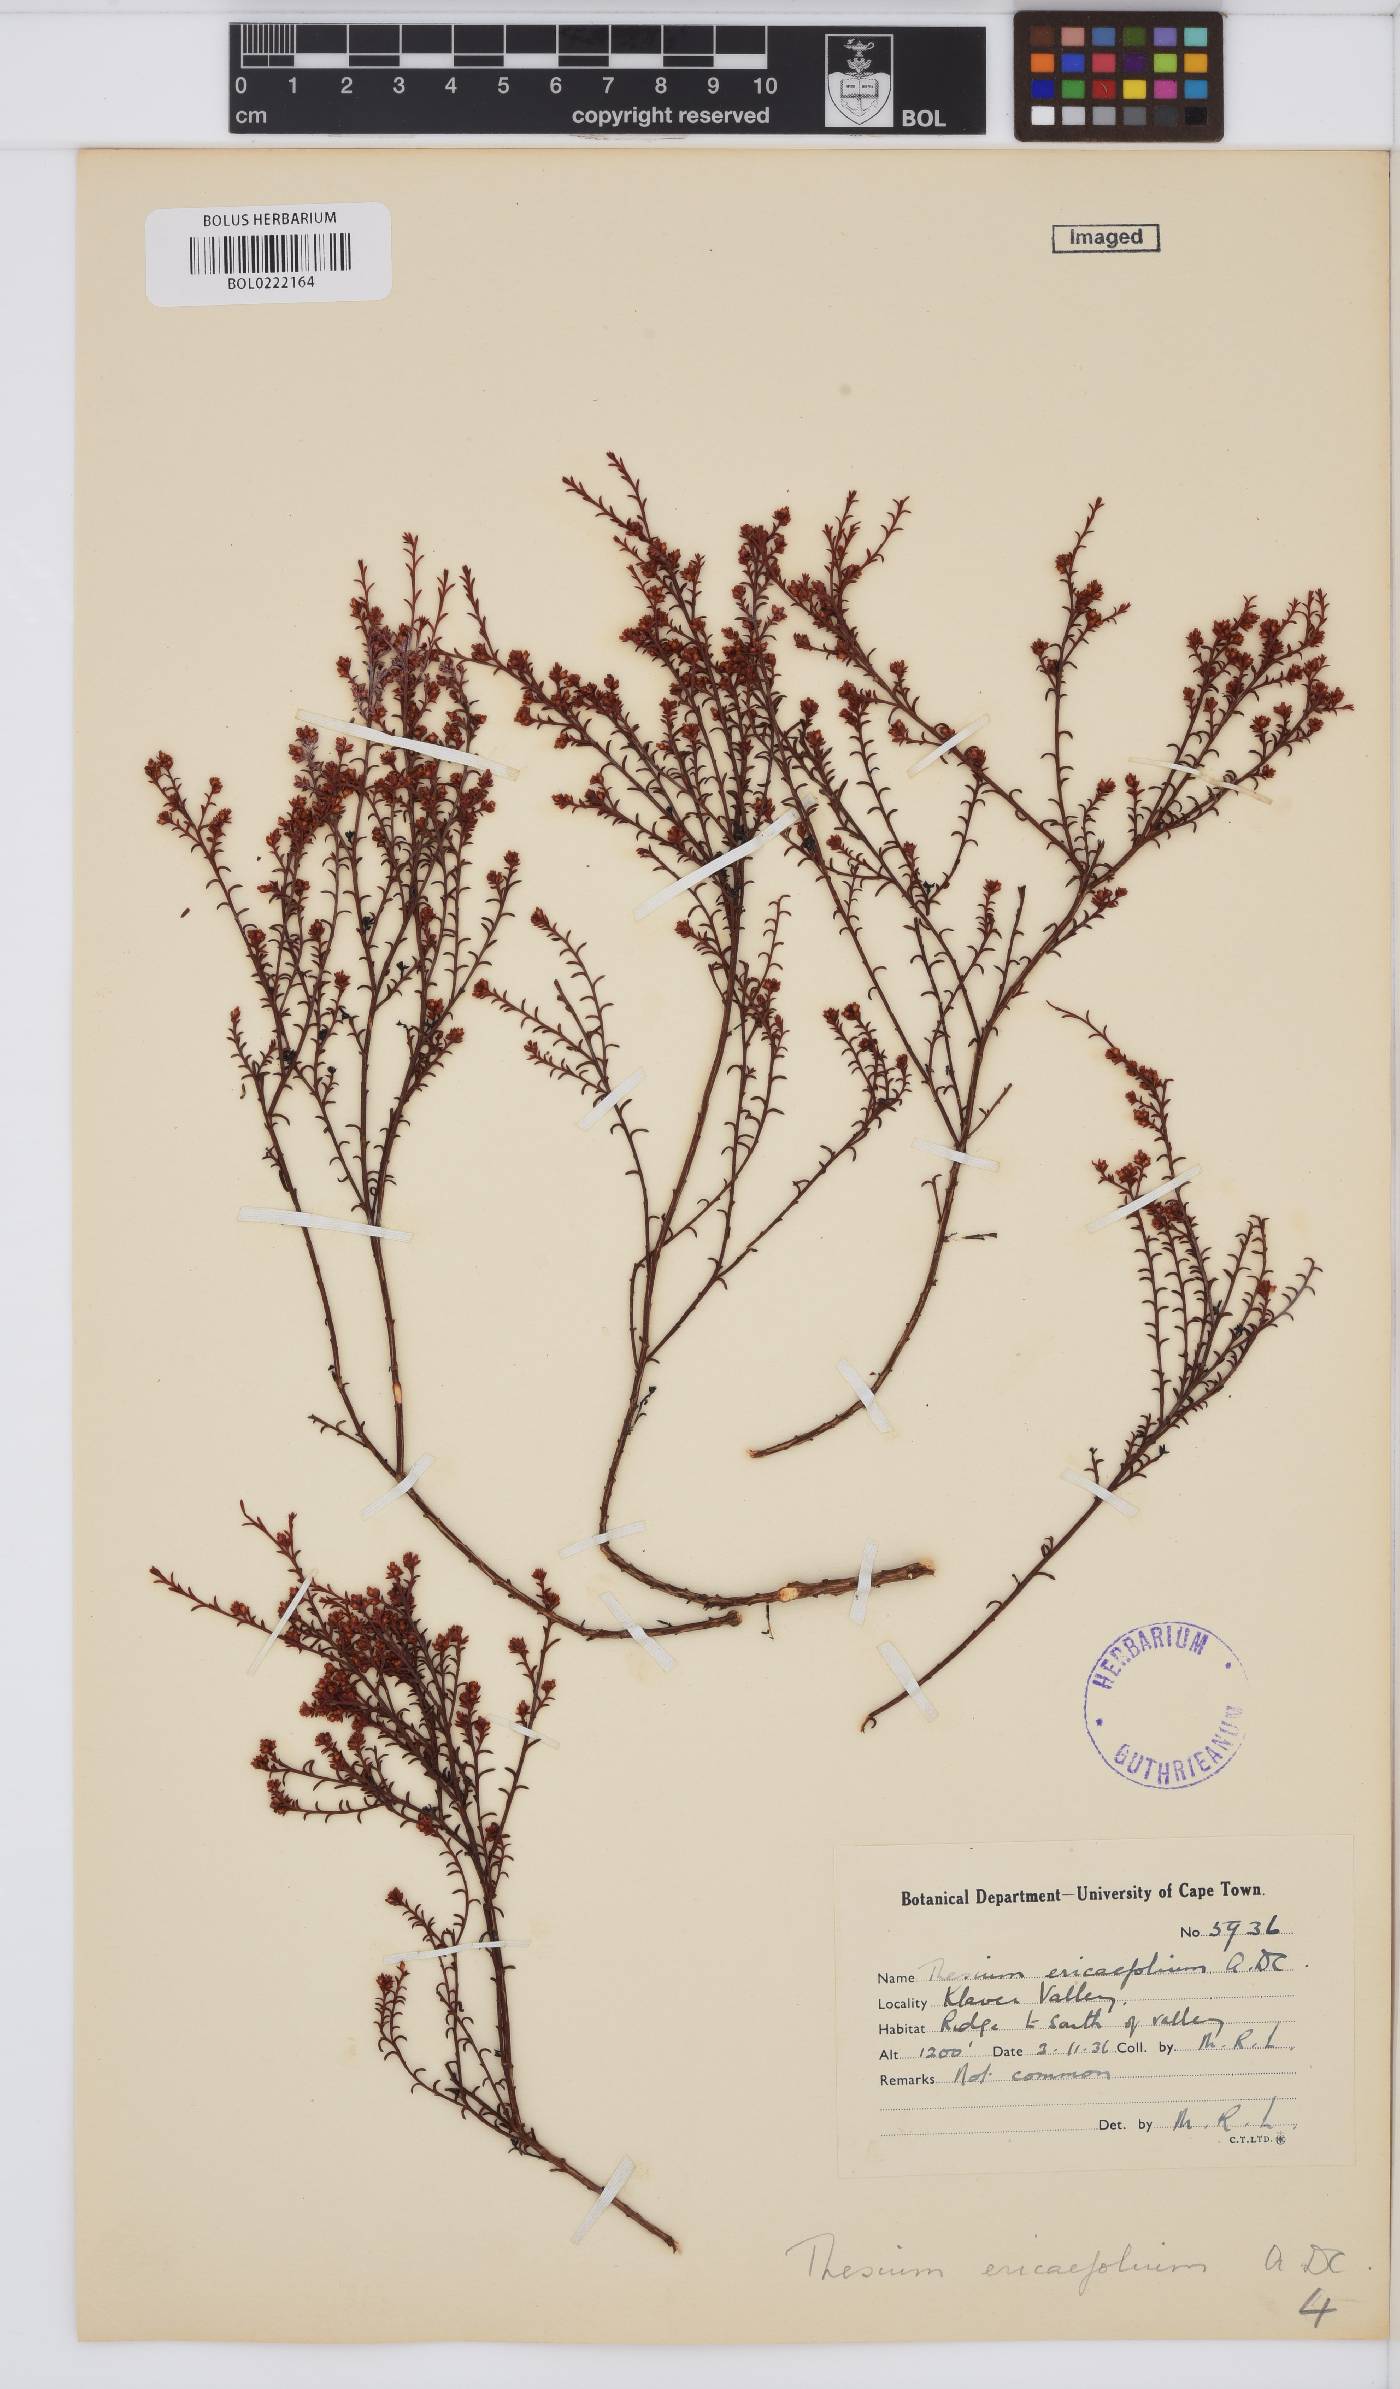 Thesium ericaefolium image